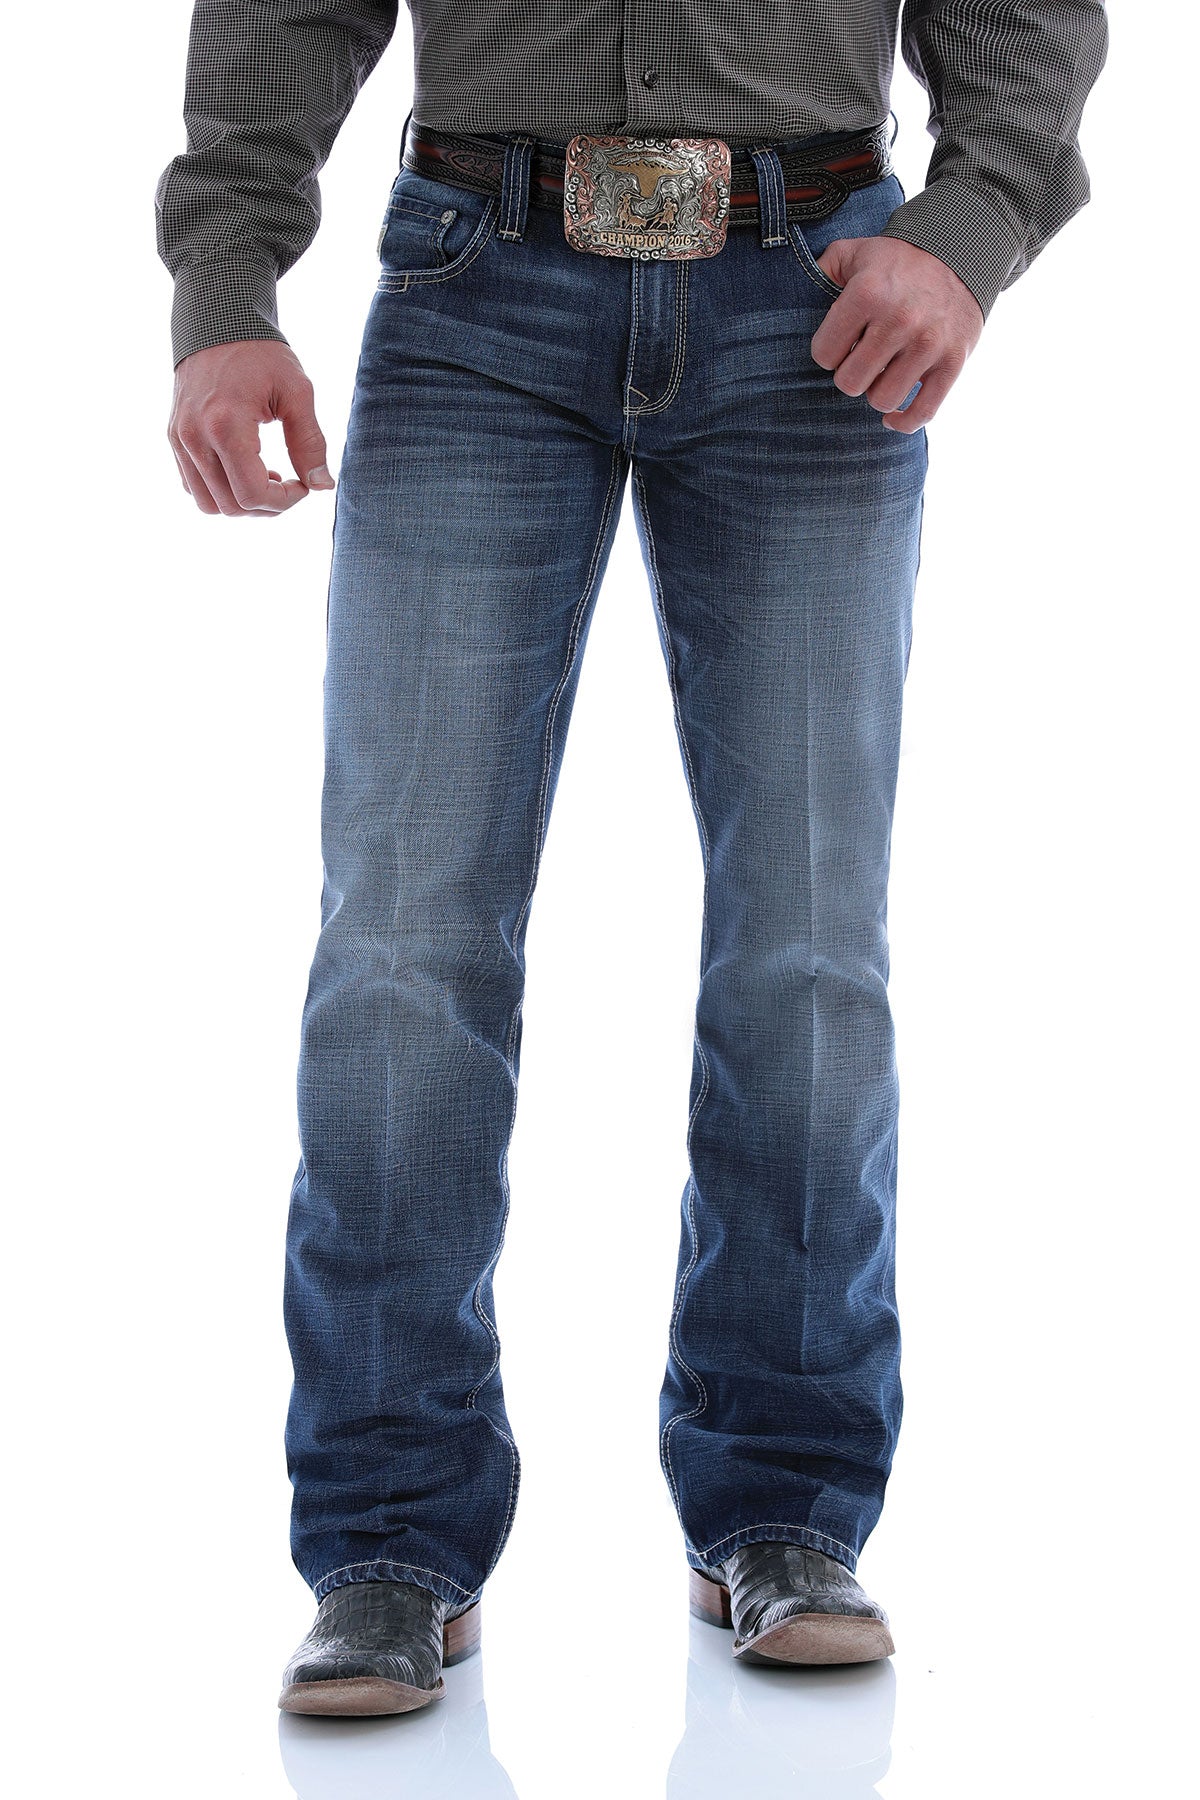 Cinch Men's Carter 2.0 Jeans